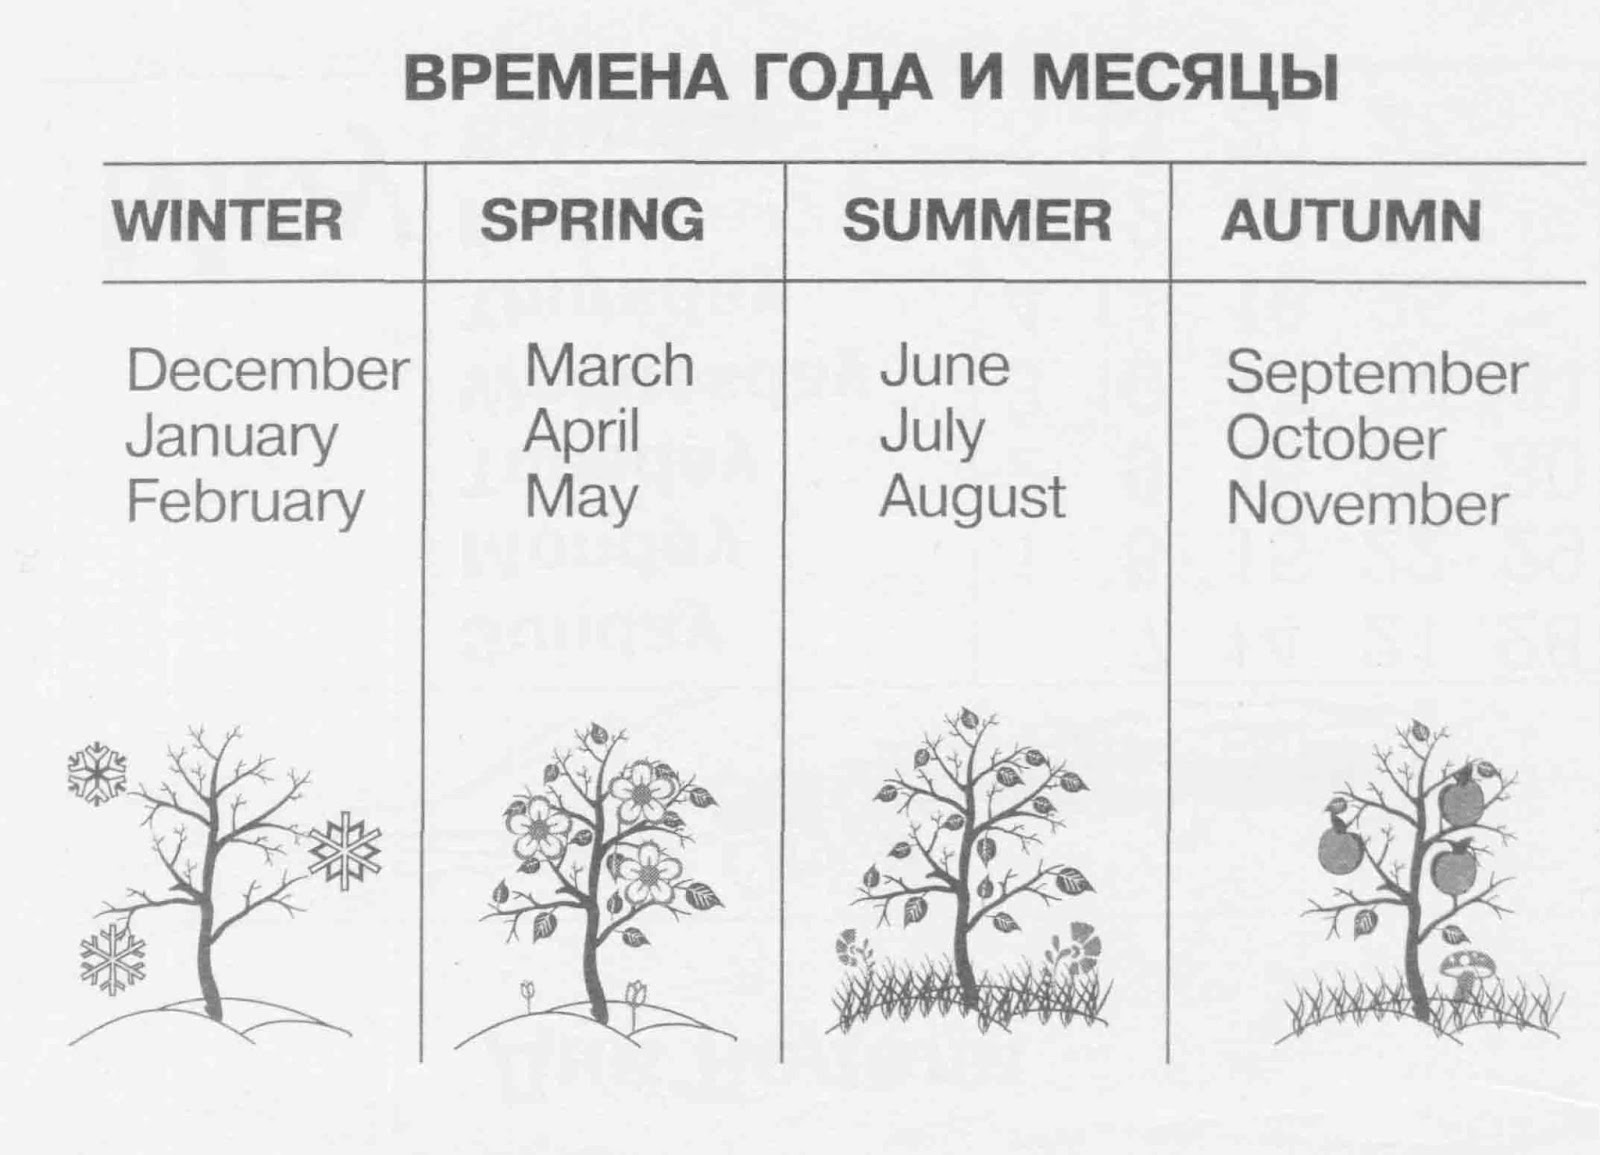 Название английских месяцев на русском. Поры года на английском с транскрипцией. Названия месяцев и времен года на английском языке. Времена года по месяцам по английскому. Времена года и месяцы на английском языке.